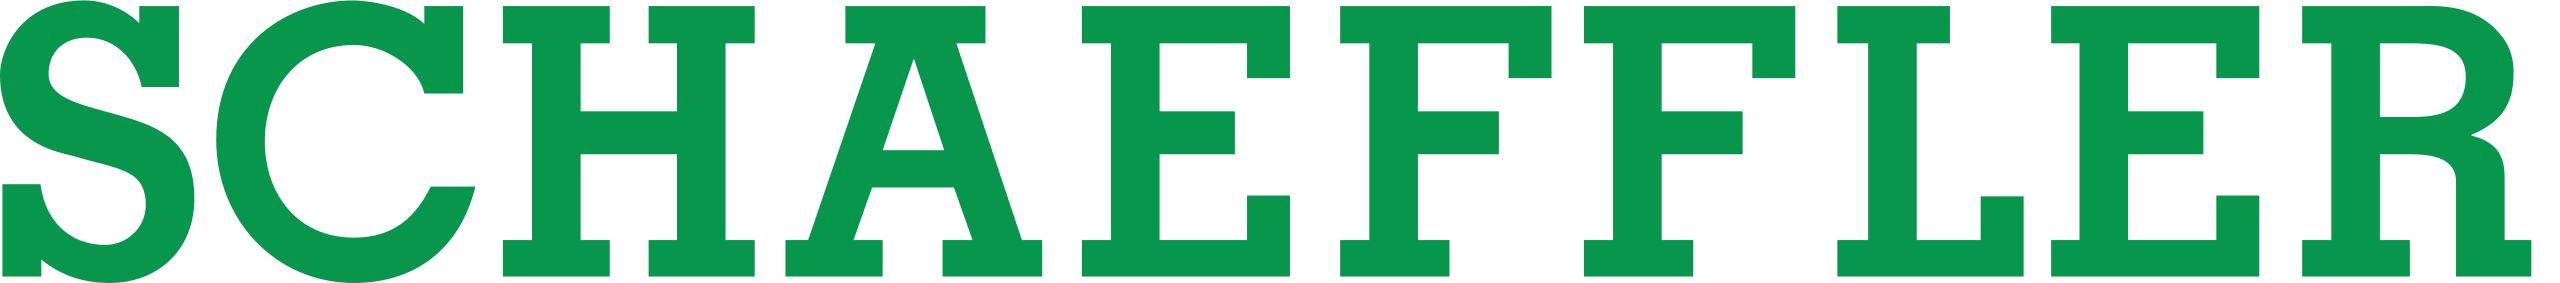 Schaeffler_logo  